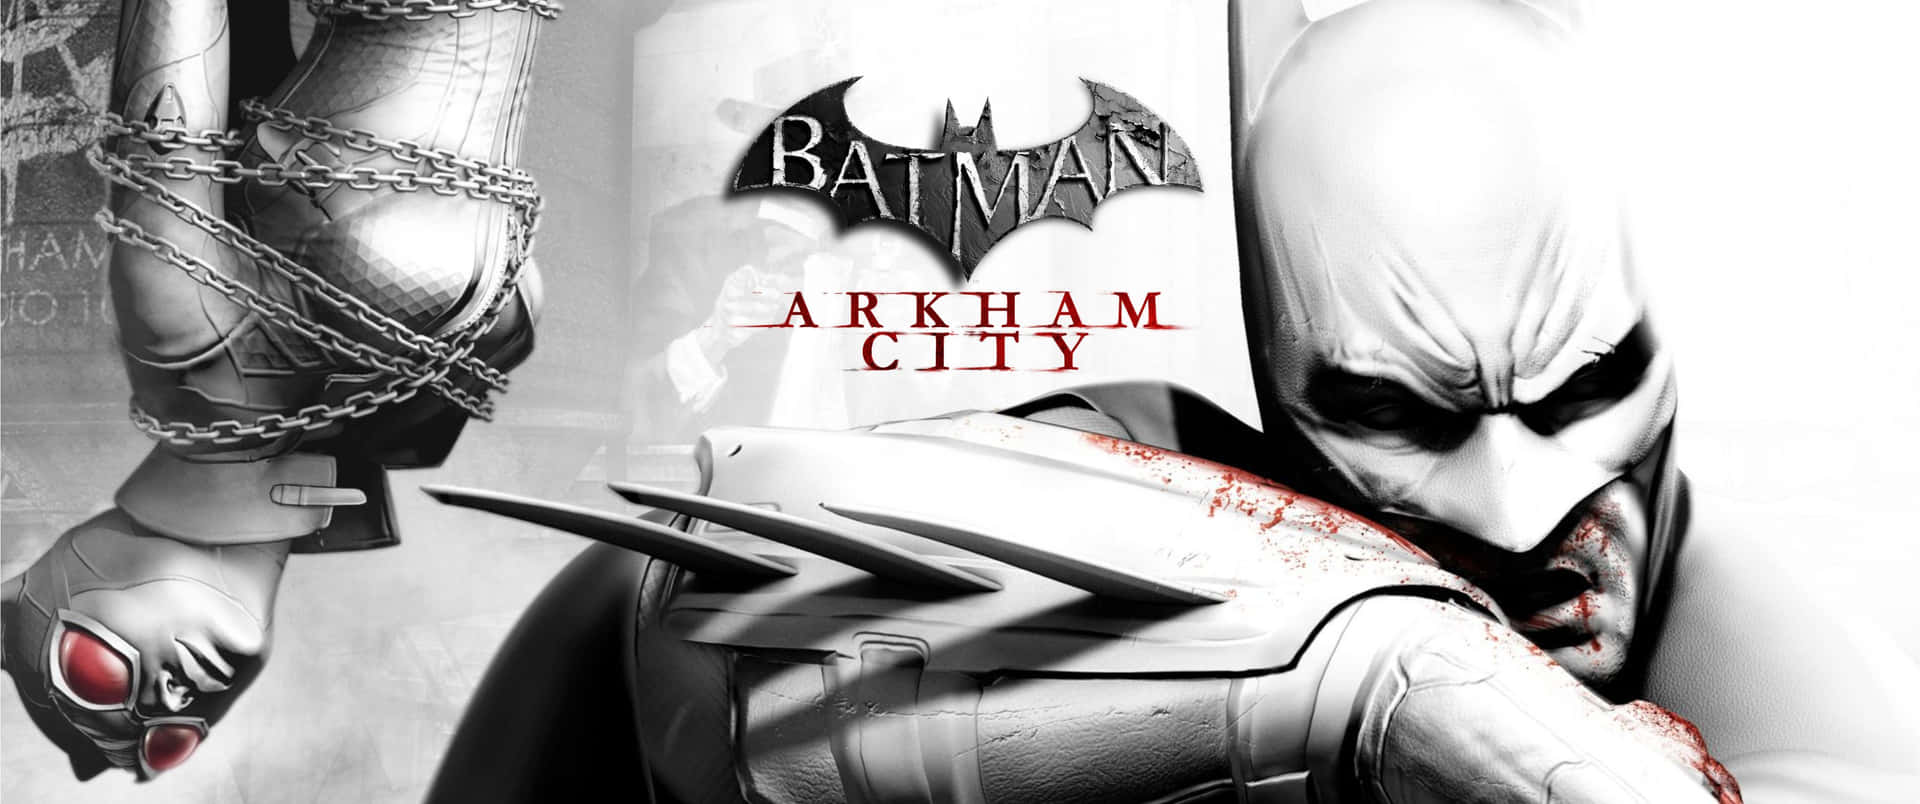 Skyddagotham City Med Mörkrets Riddare: Batman I Arkham City.